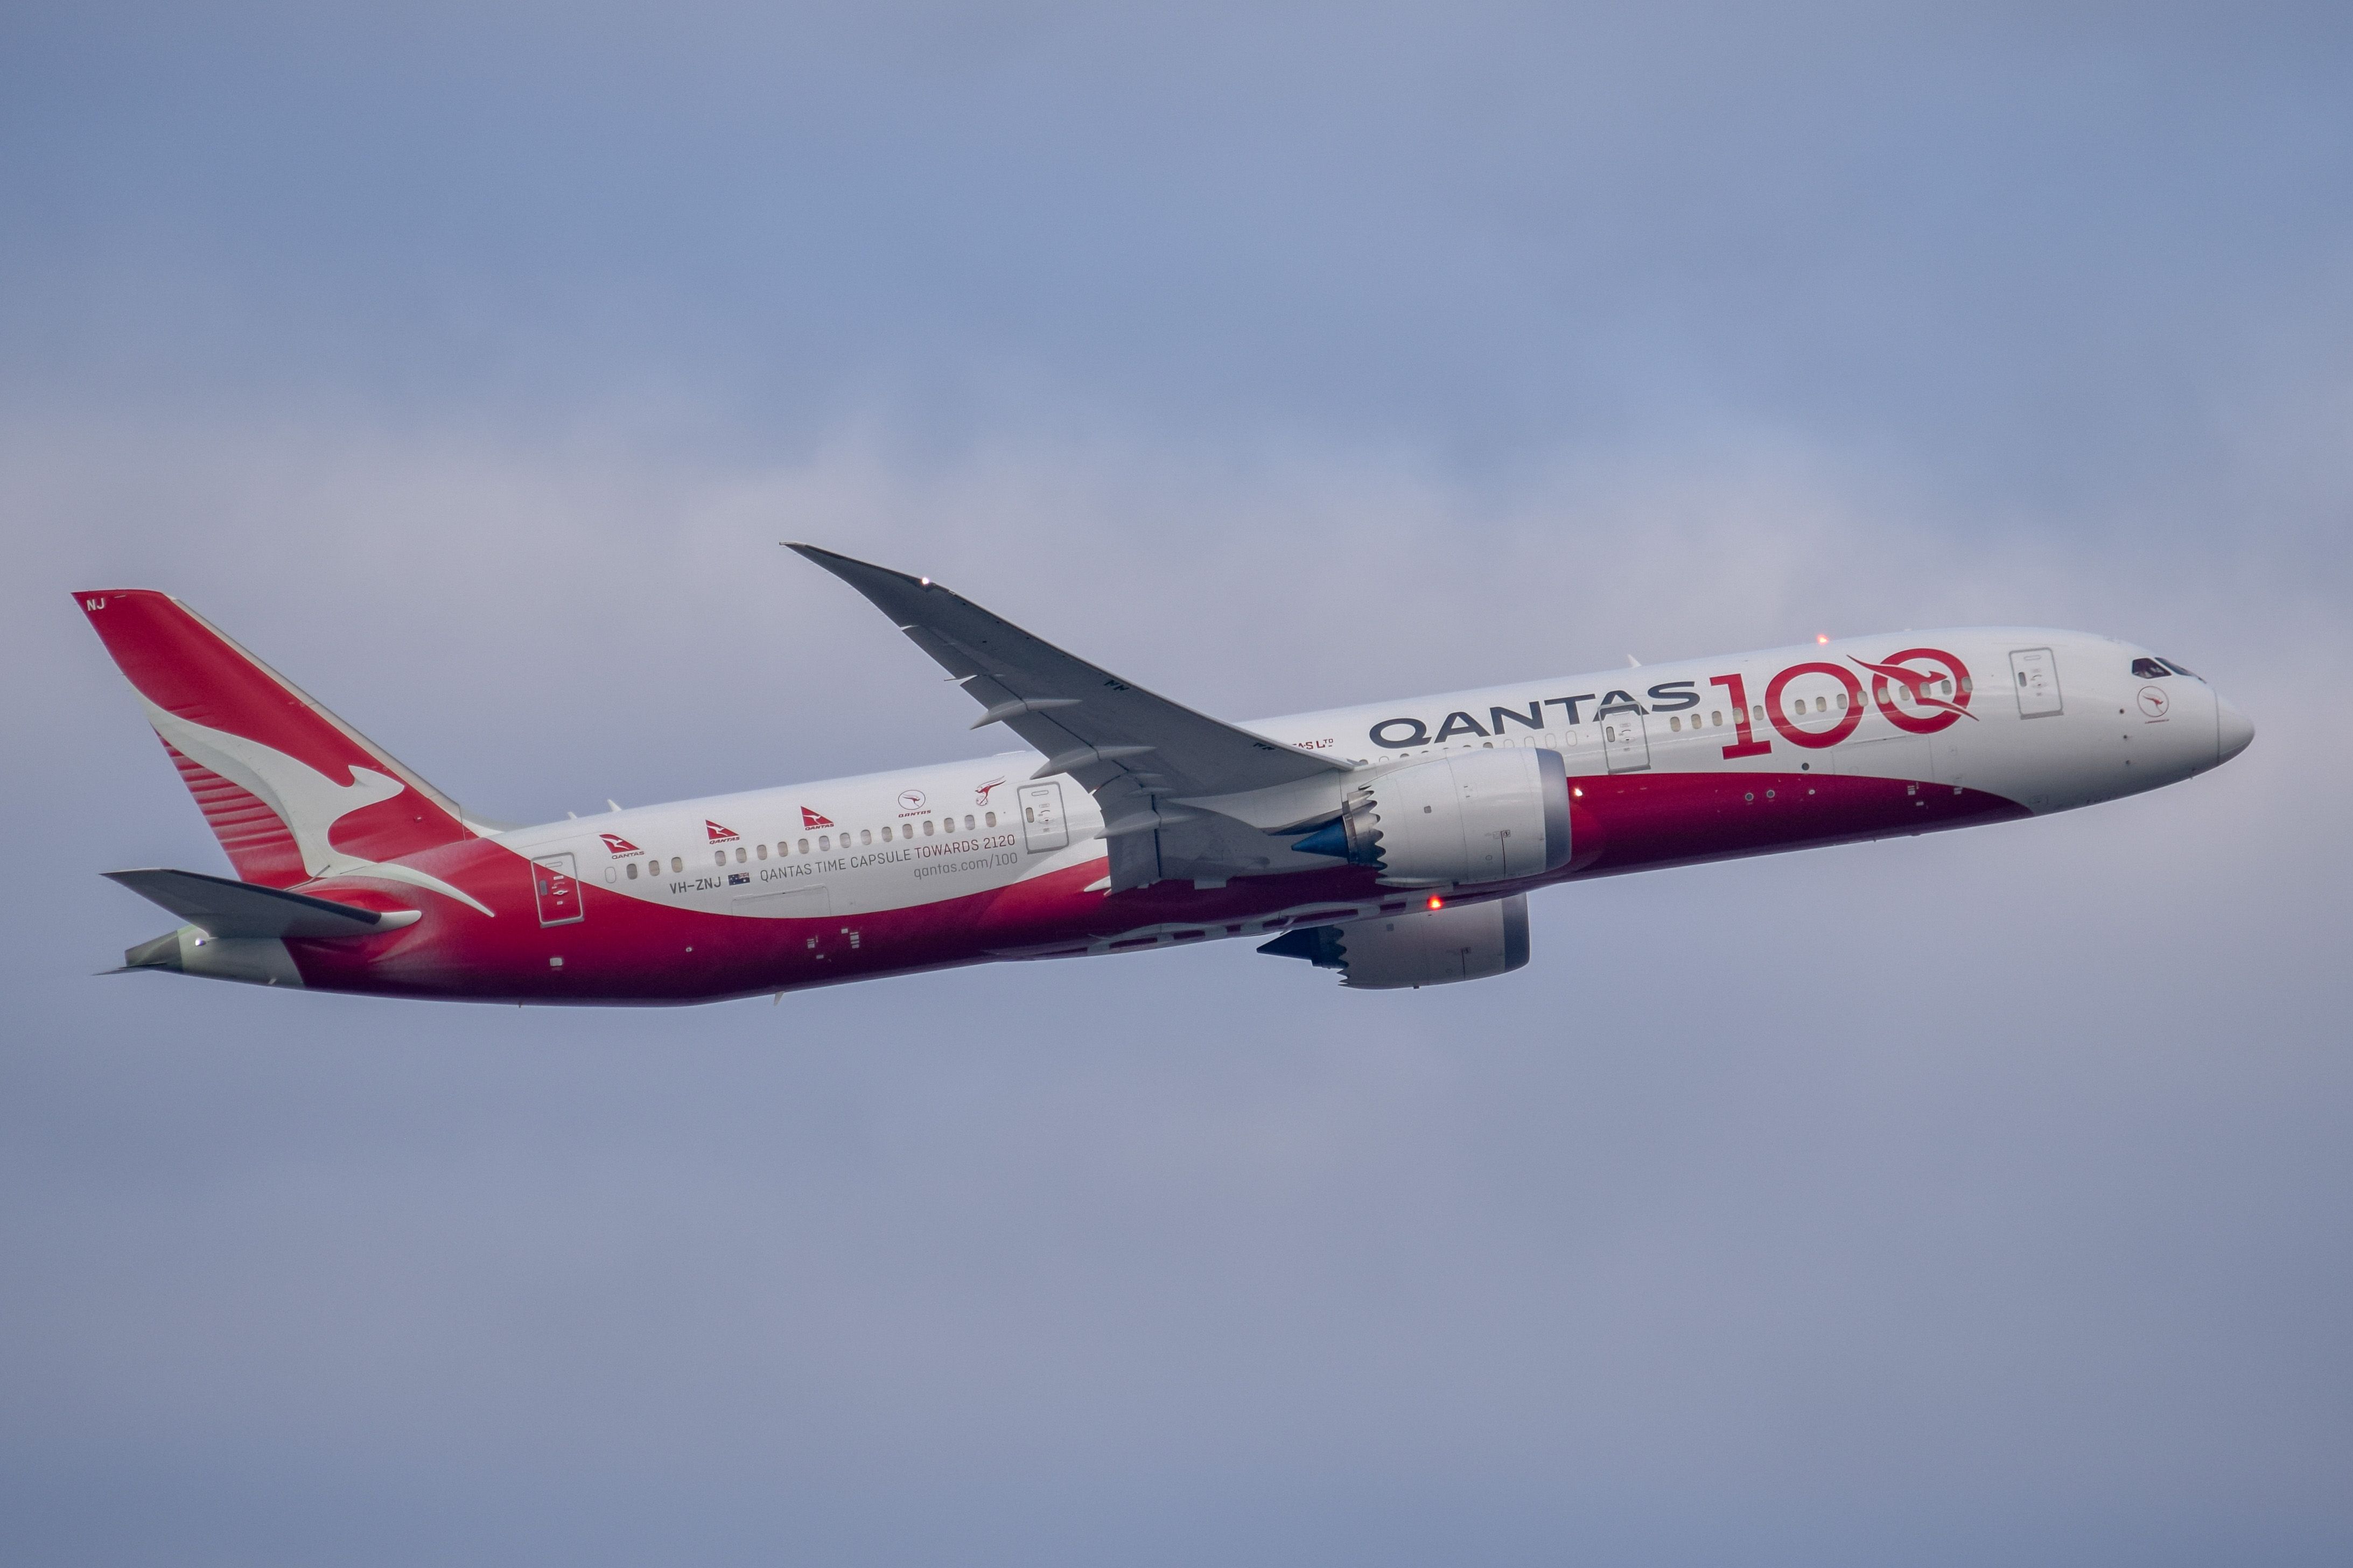 Qantas 787 100-year livery aircraft